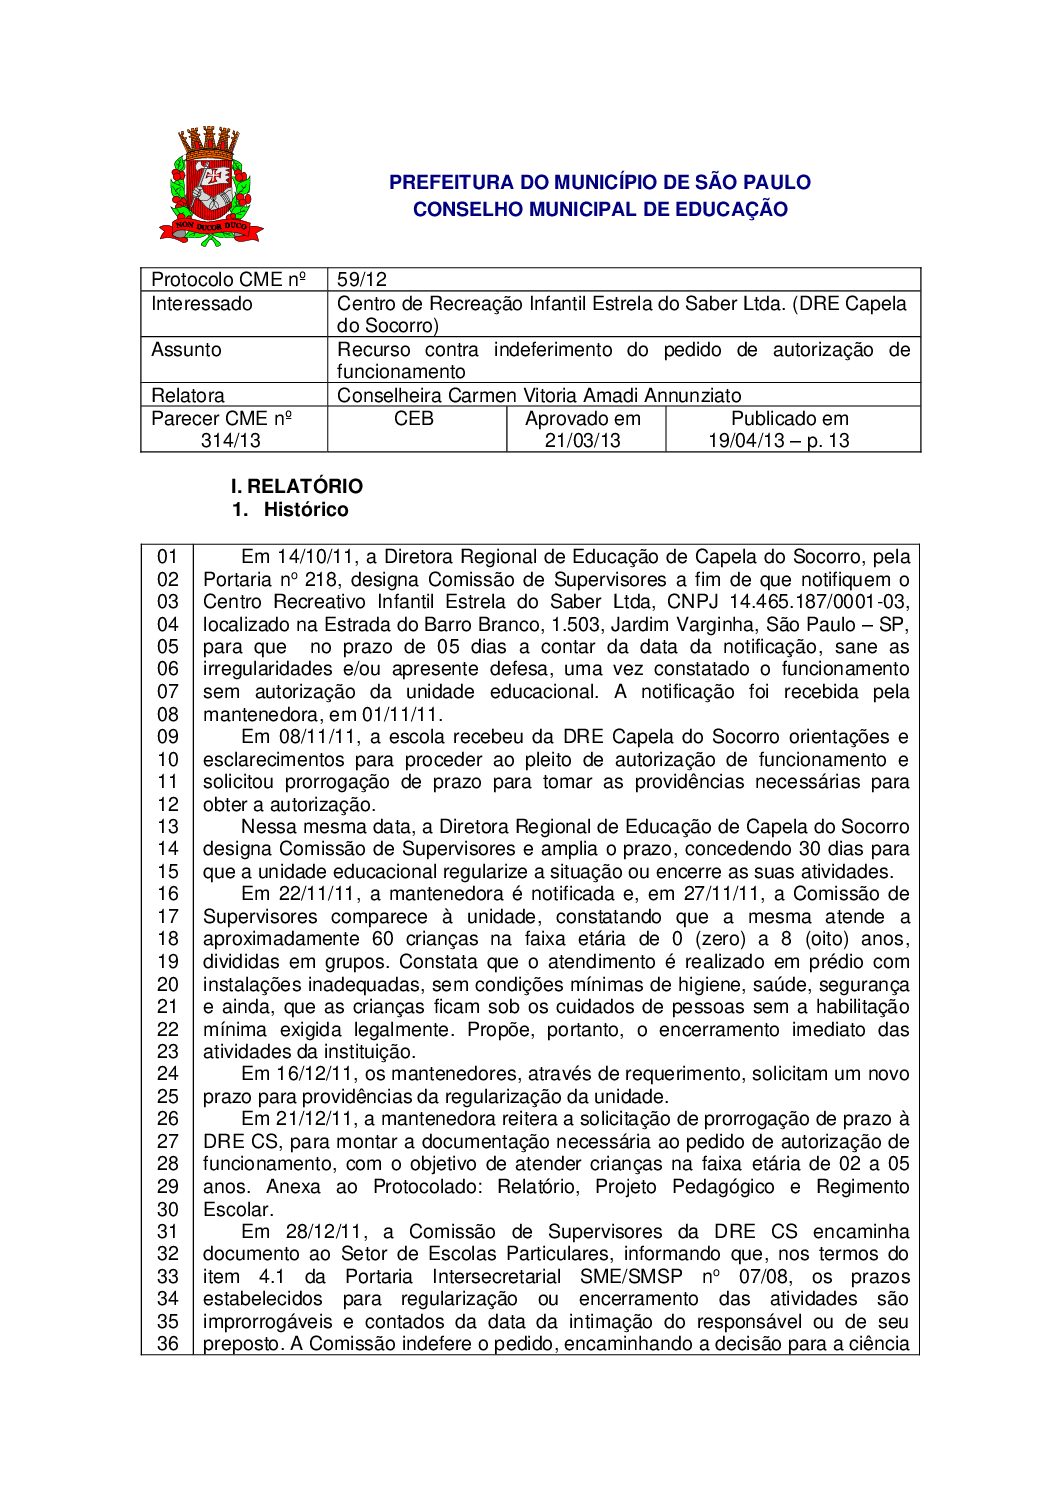 Parecer CME nº 314/2013 - Centro de Recreação Infantil Estrela do Saber Ltda. (DRE Capela do Socorro) - Recurso contra indeferimento do pedido de autorização de funcionamento 